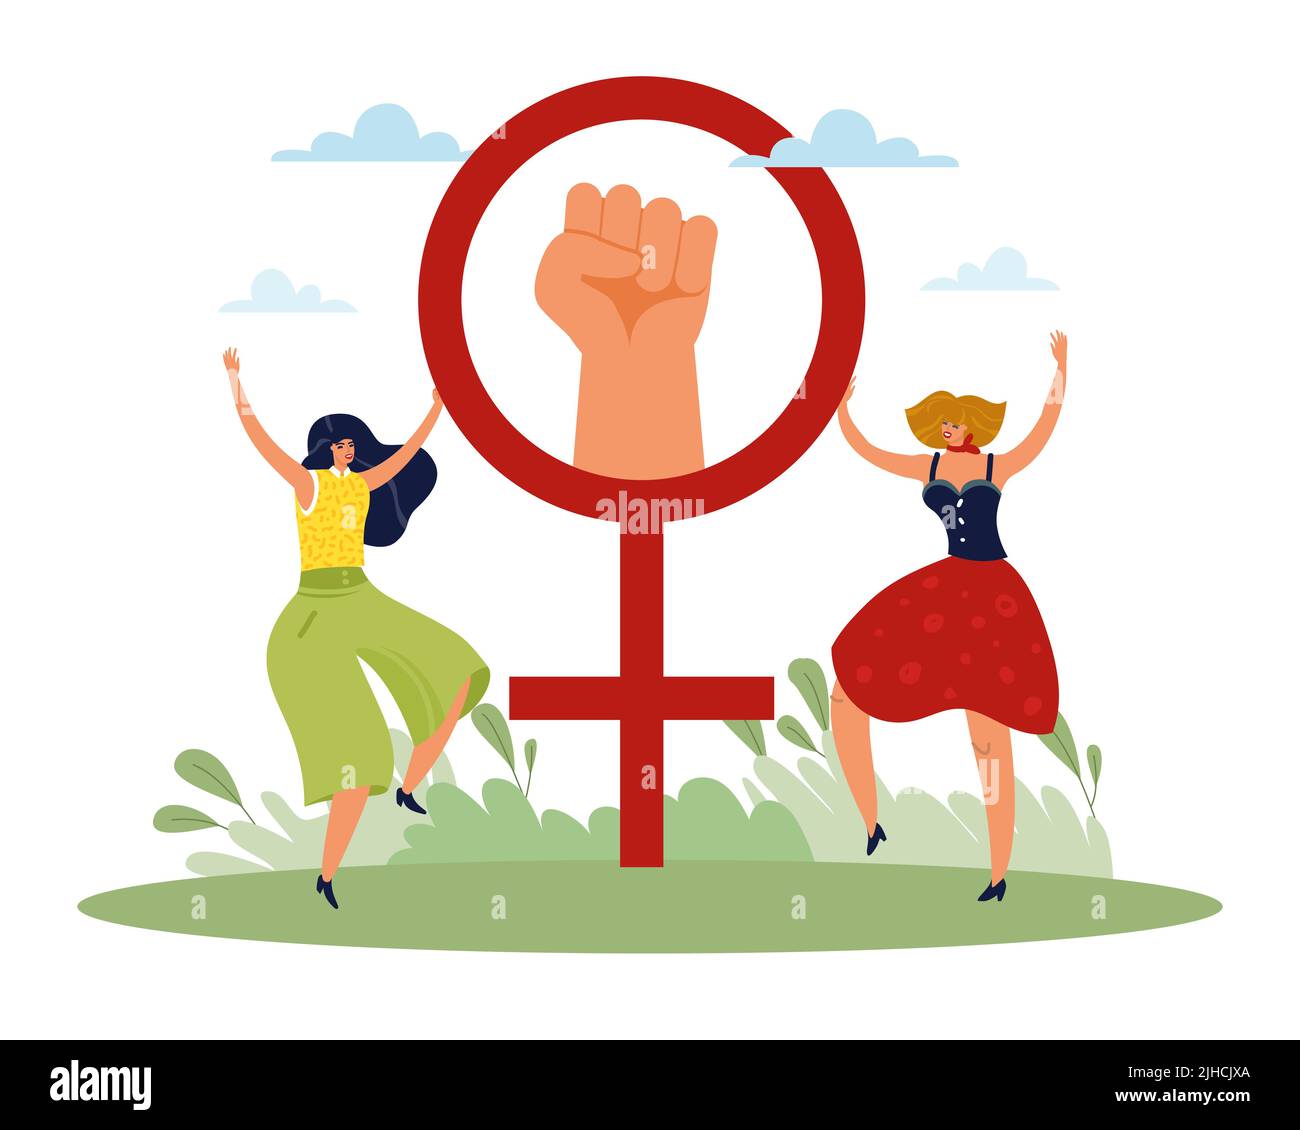 Kampf um Gleichheit. Frauenrechtsplakat, Freiheit und Unabhängigkeit, Faust aus Protest erhoben, weibliches Symbol. Einheit und Solidarität der Menschen. Vektor Stock Vektor